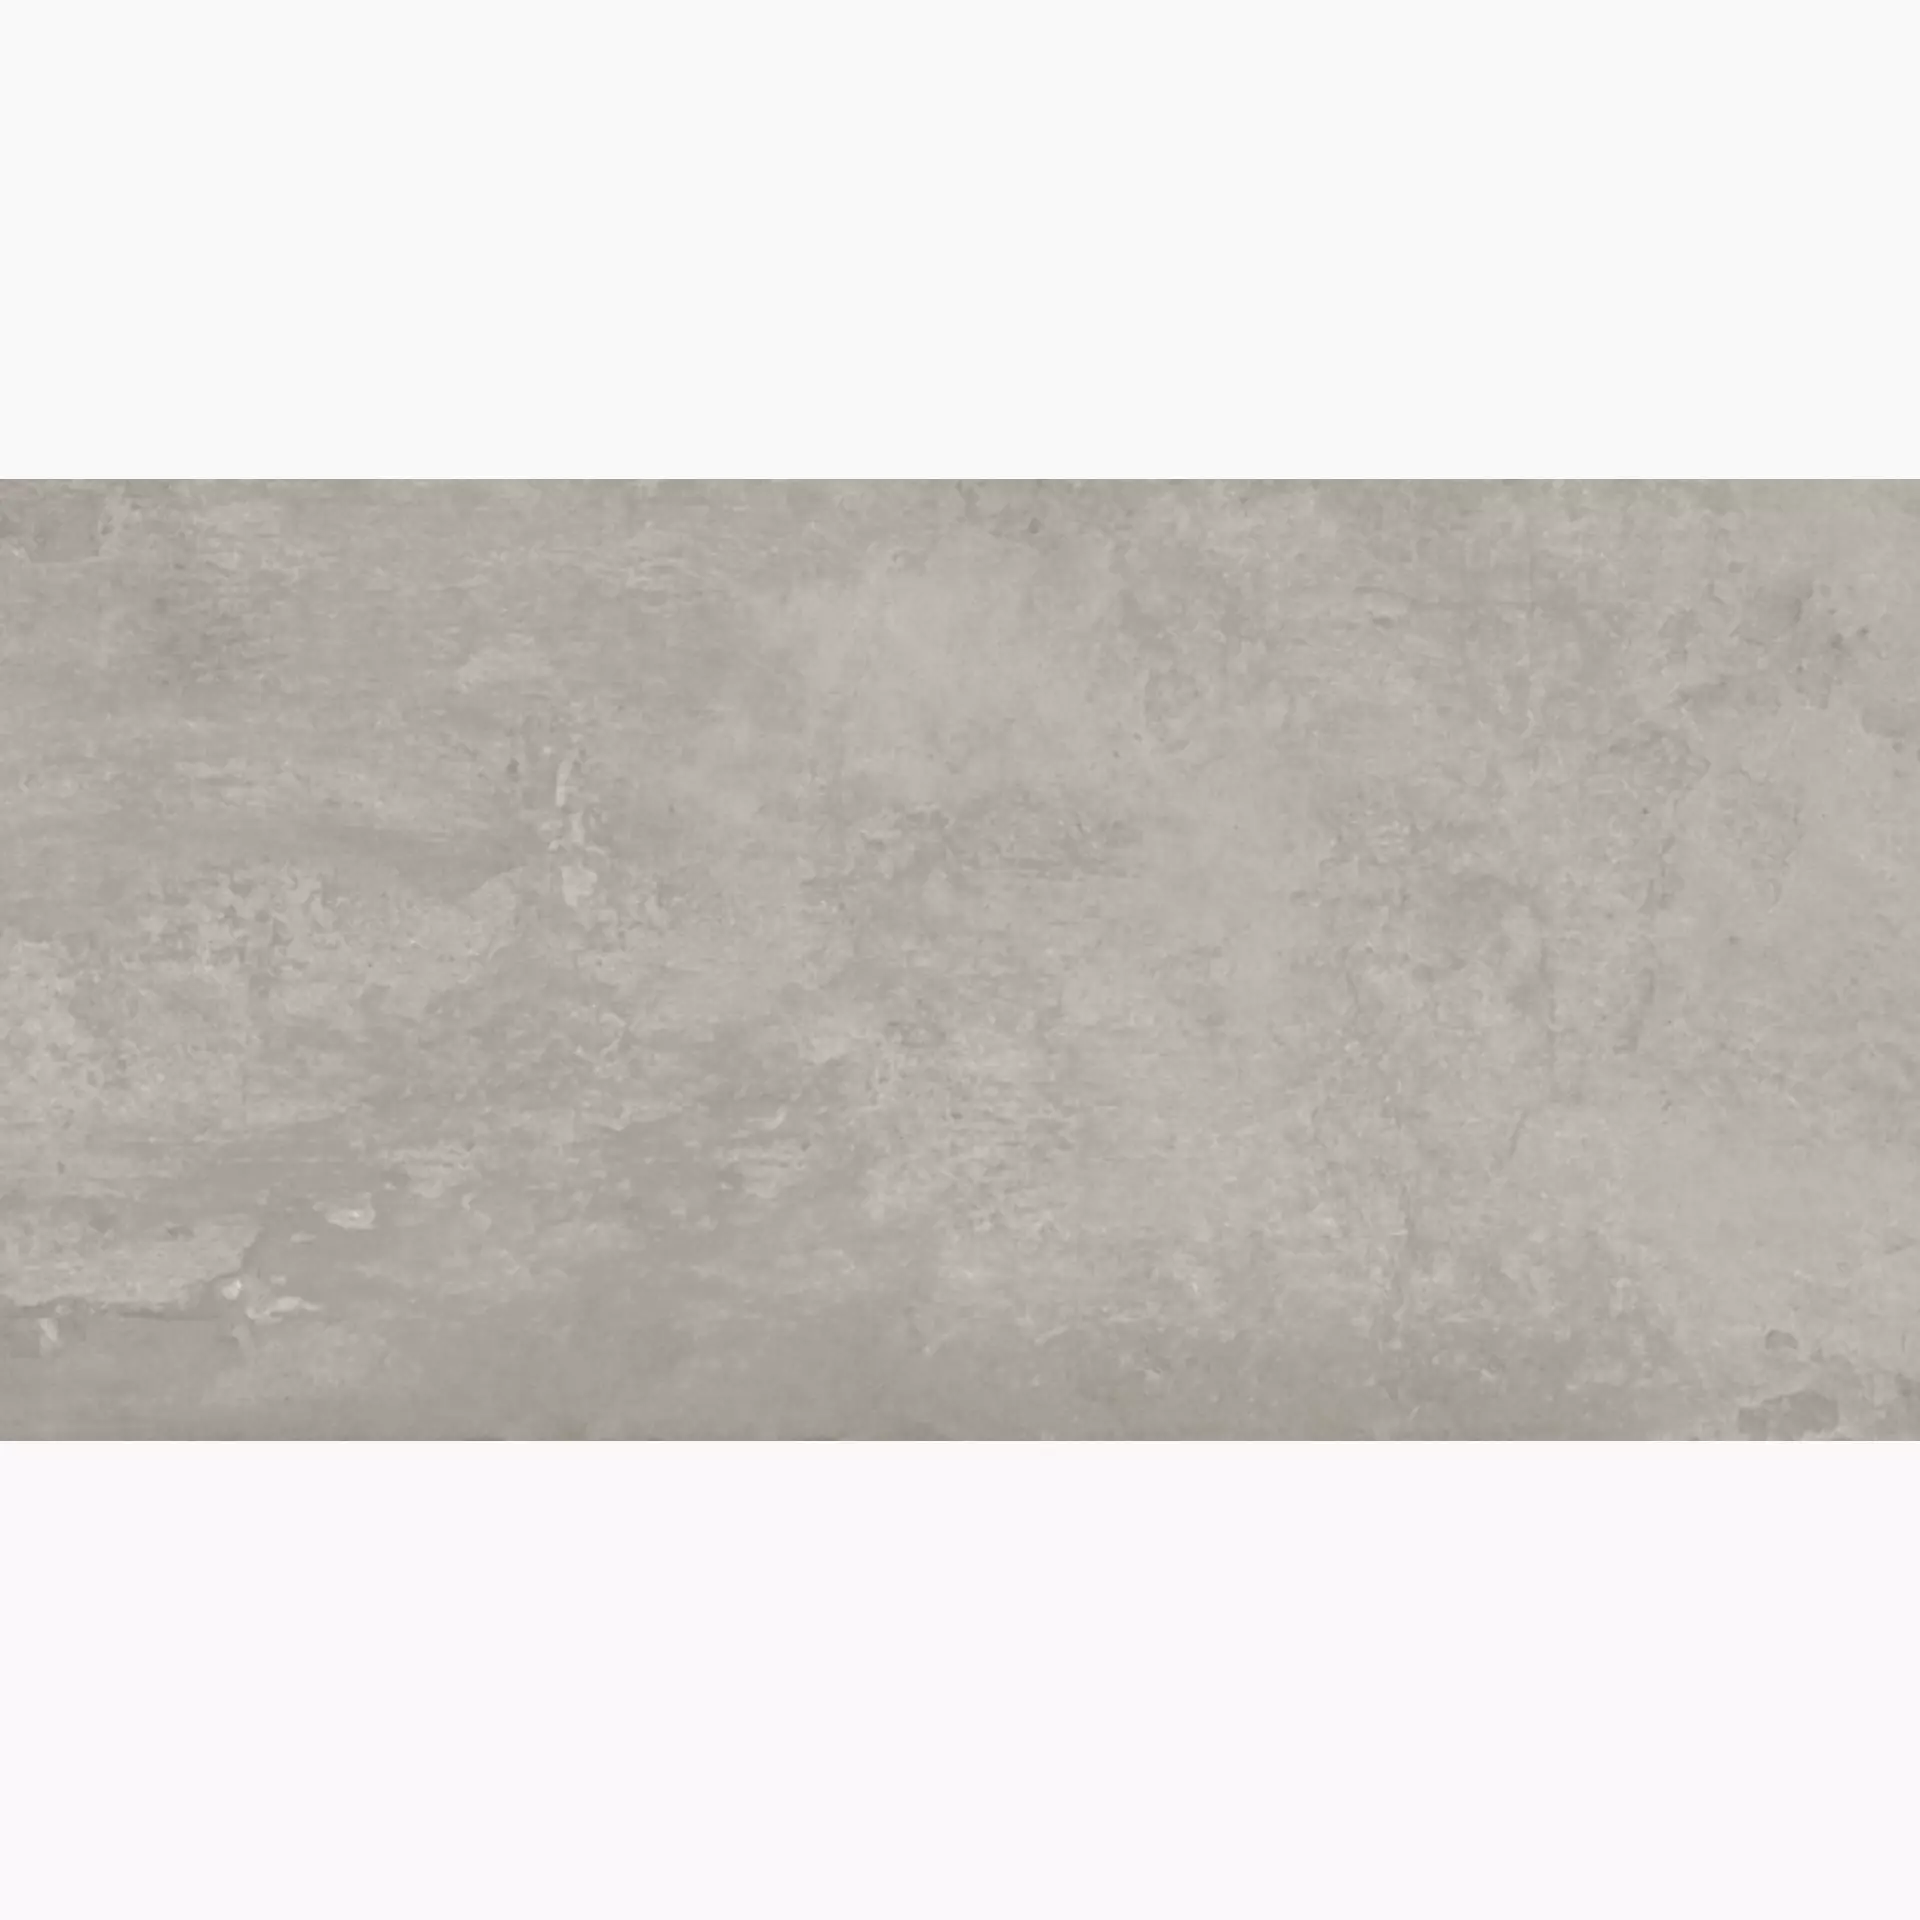 Keope Ikon Silver Naturale – Matt Silver 494B4D34 natur matt 60x120cm rektifiziert 9mm